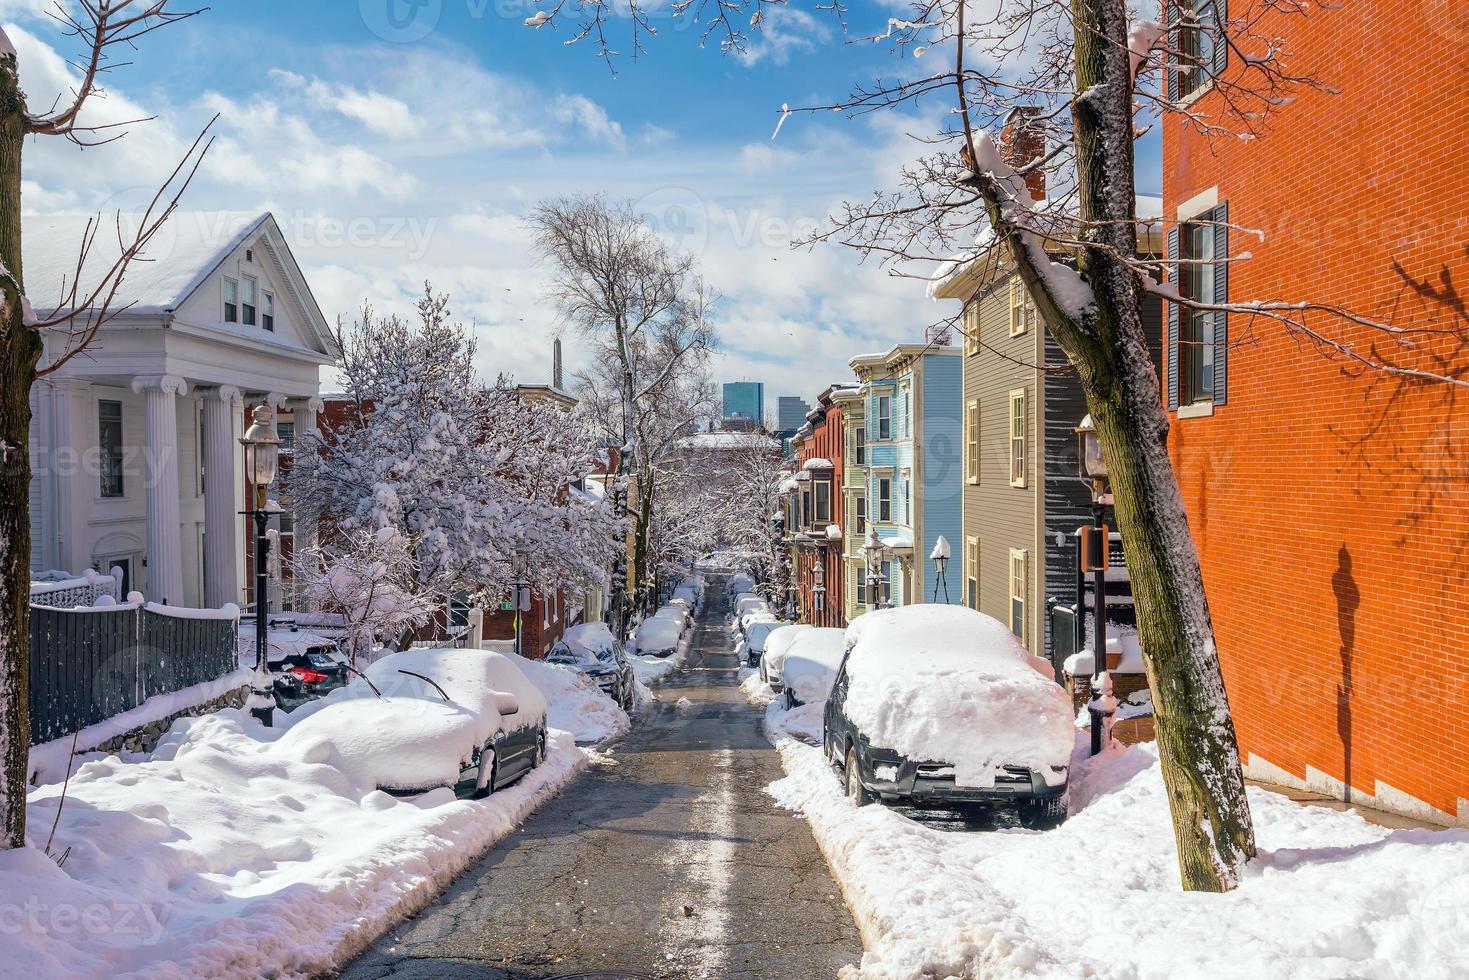 Casas en la histórica zona de Bunker Hill después de la tormenta de nieve en Boston, Massachusetts foto